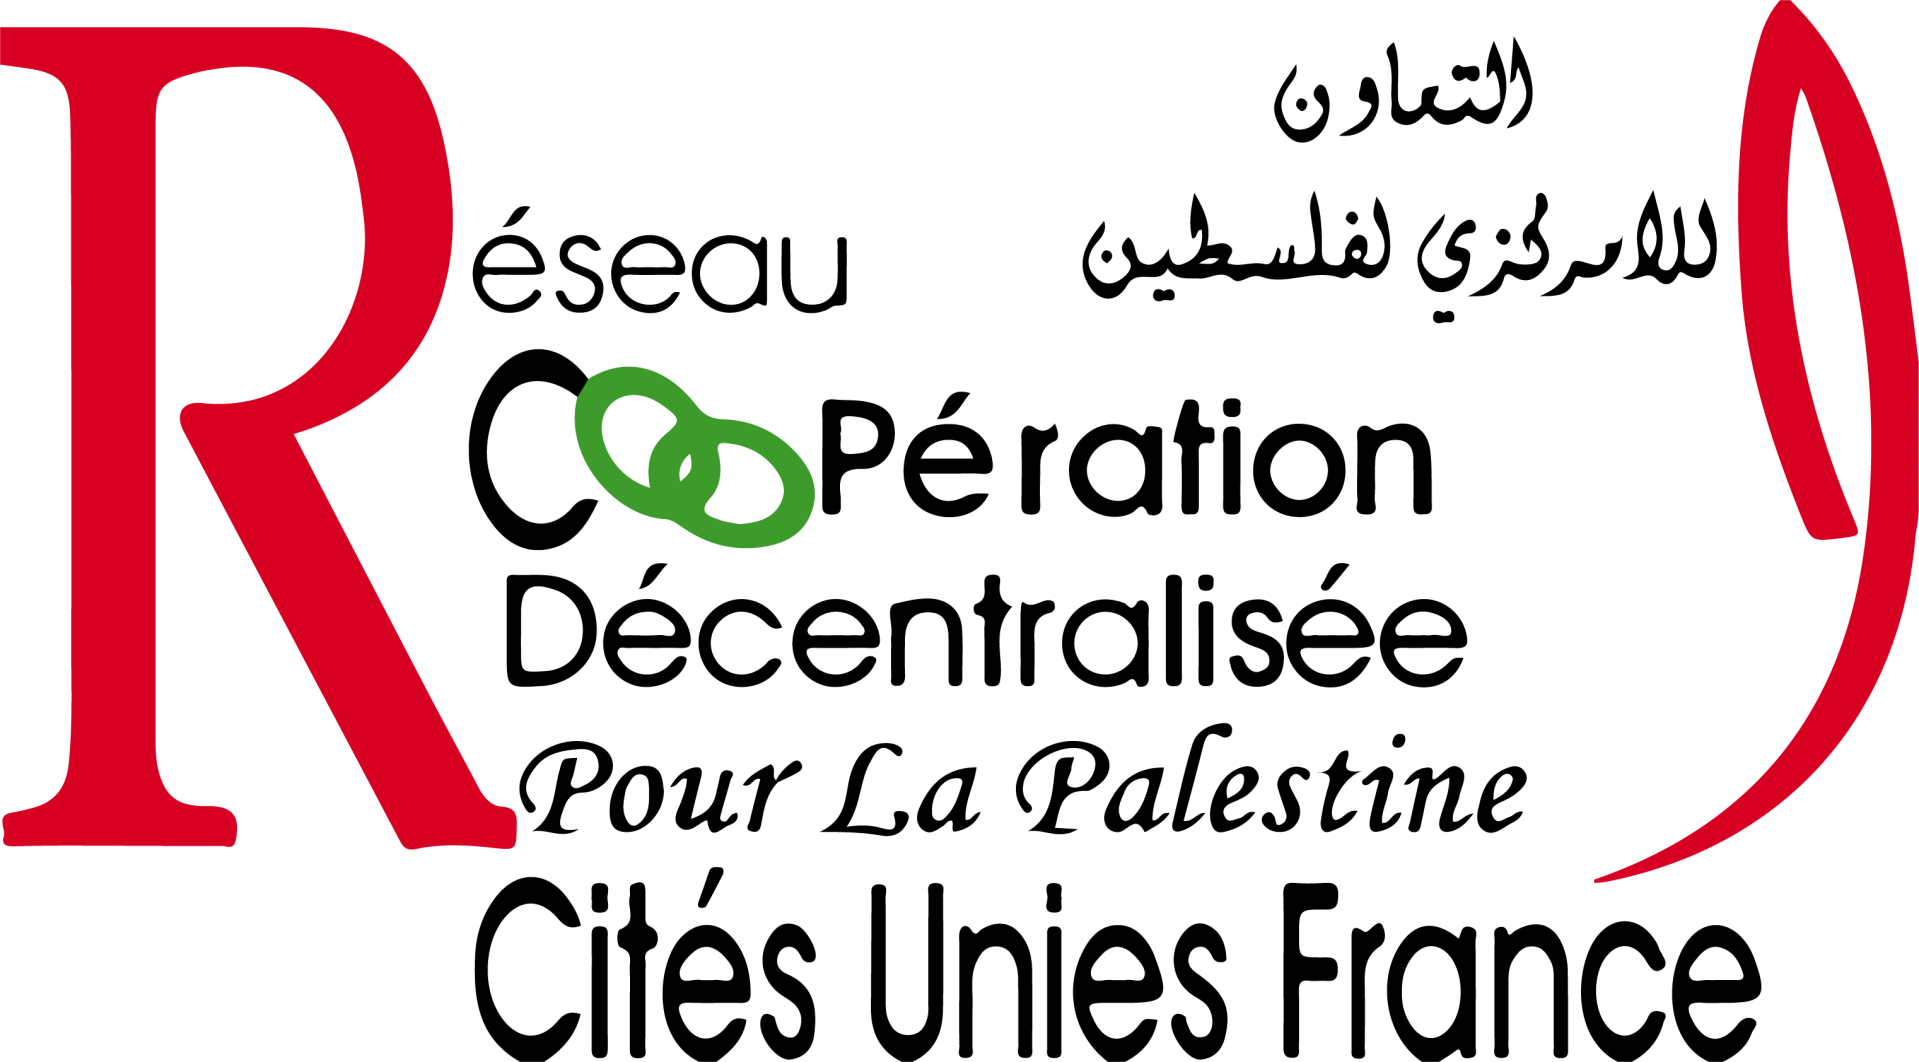 Logo rcdp vector